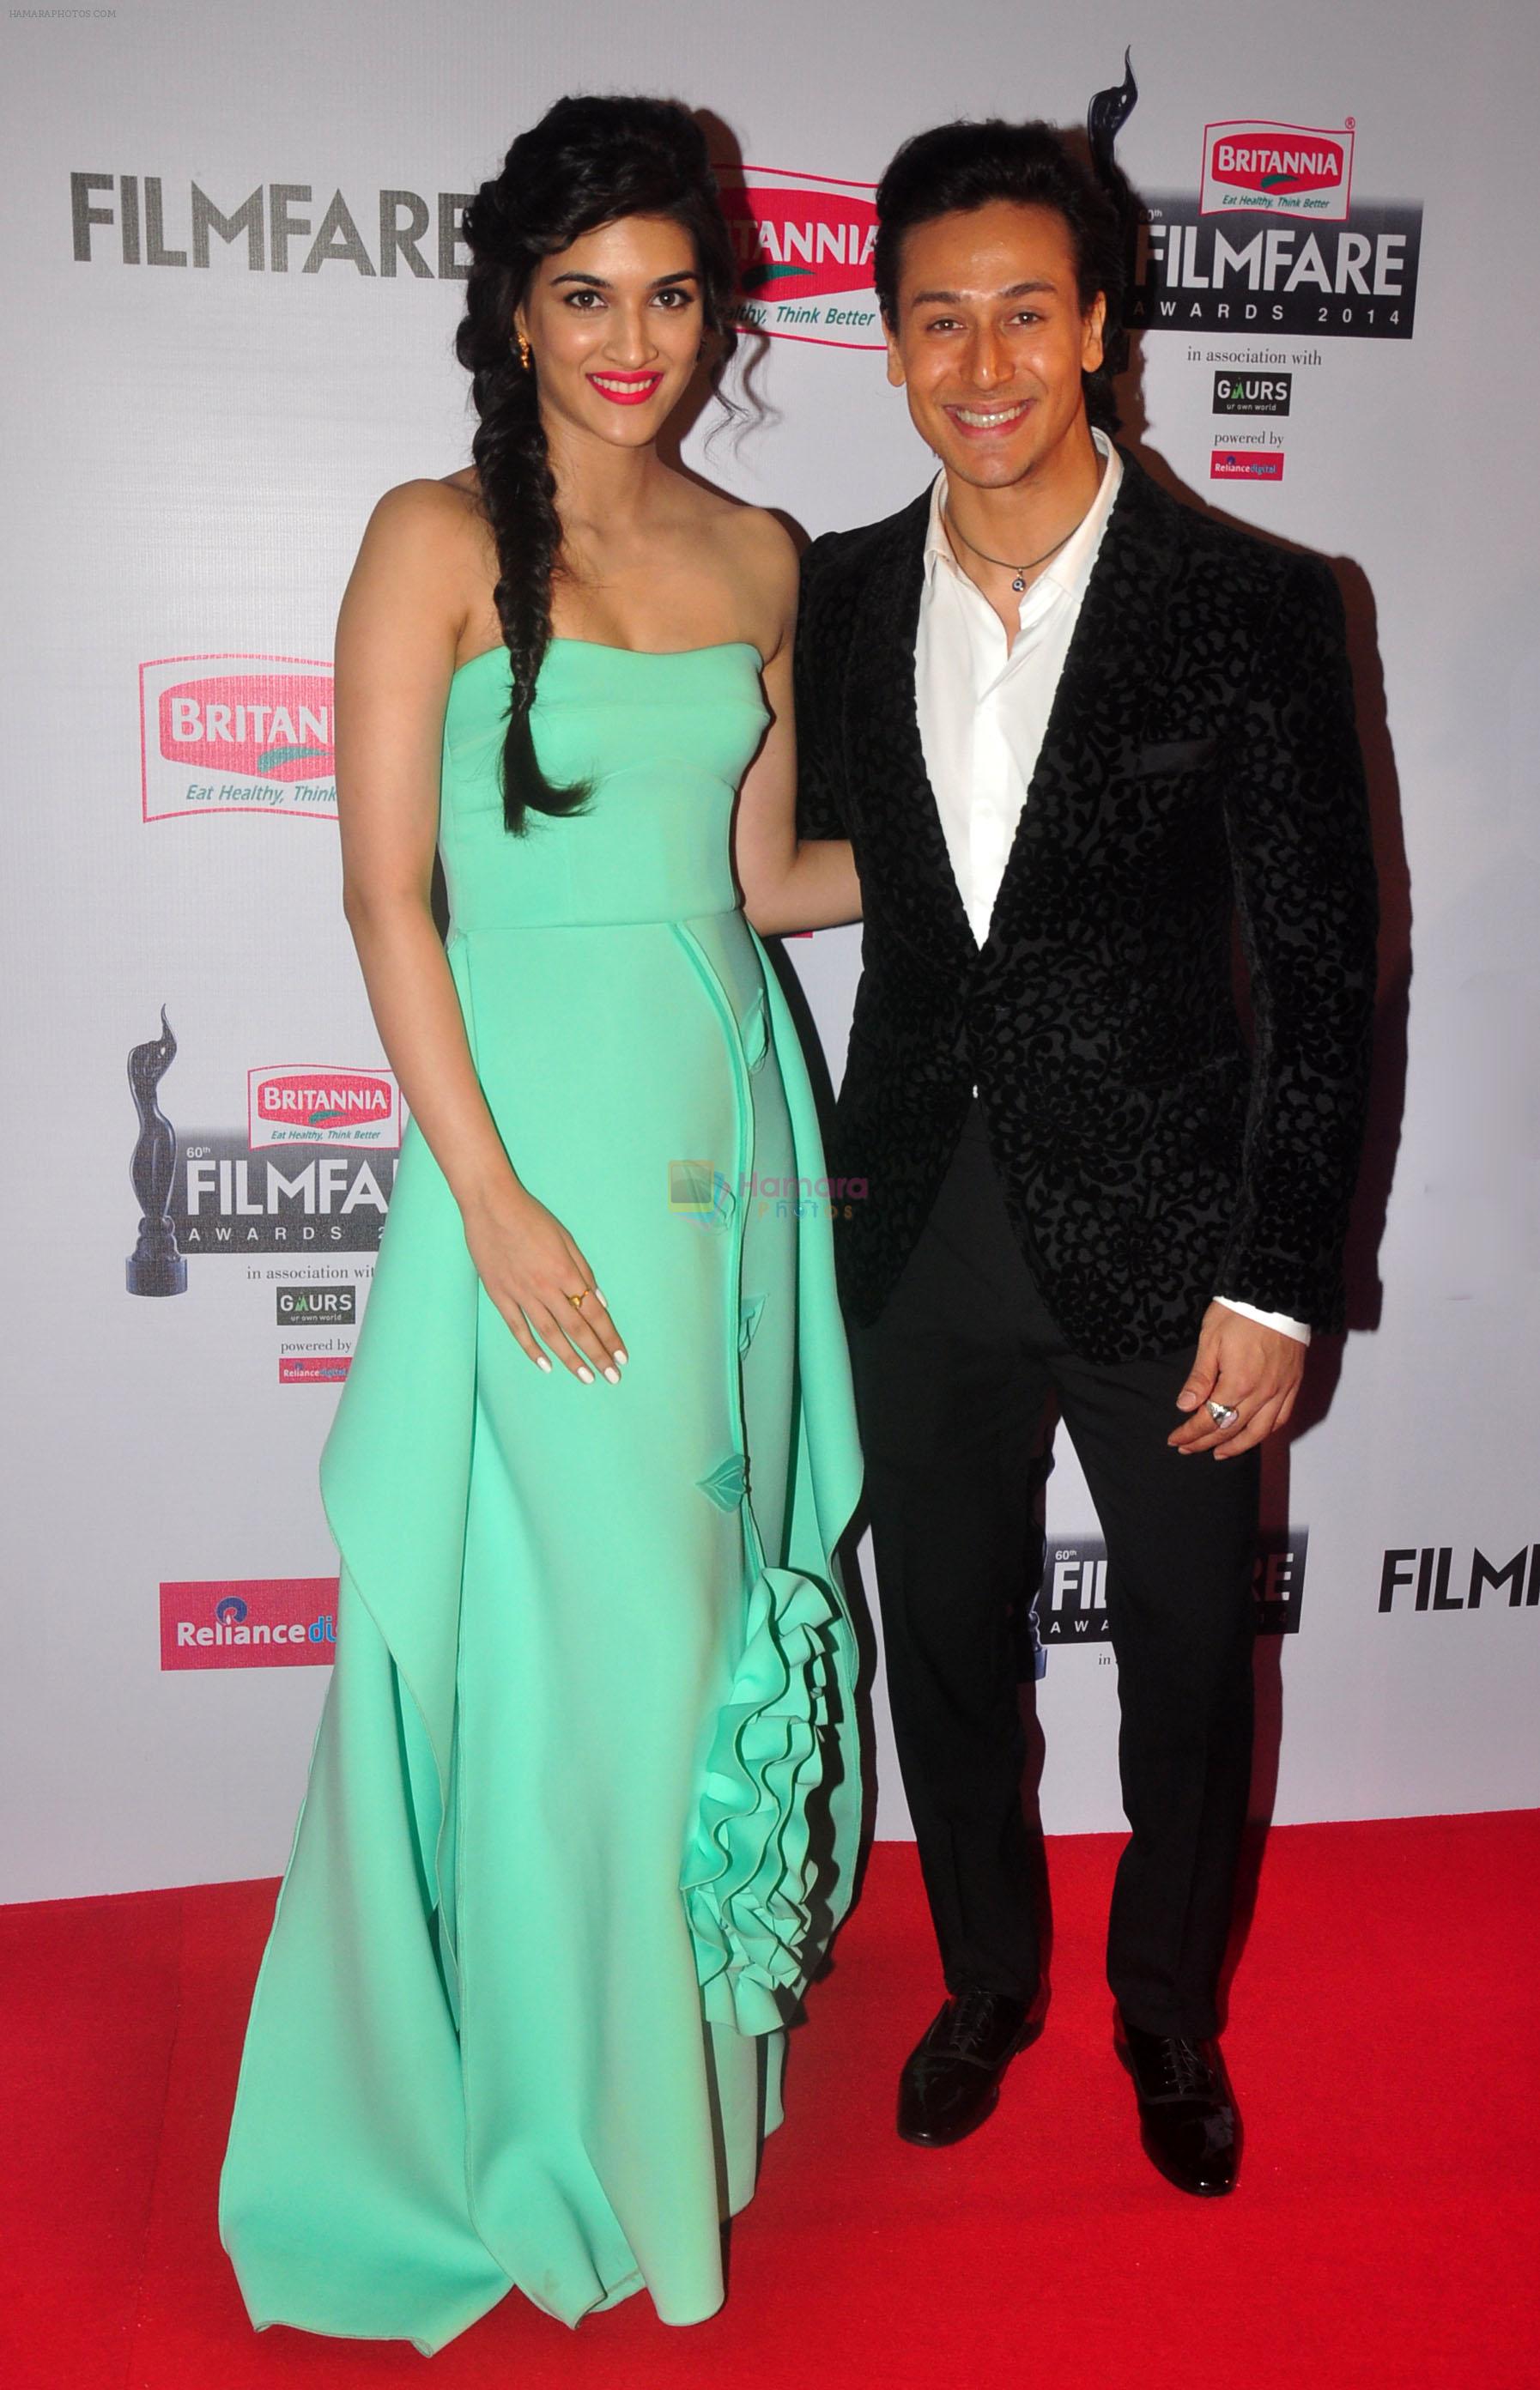 Kriti Sanon & Tiger Shroff graces the red carpet at the 60th Britannia Filmfare Awards